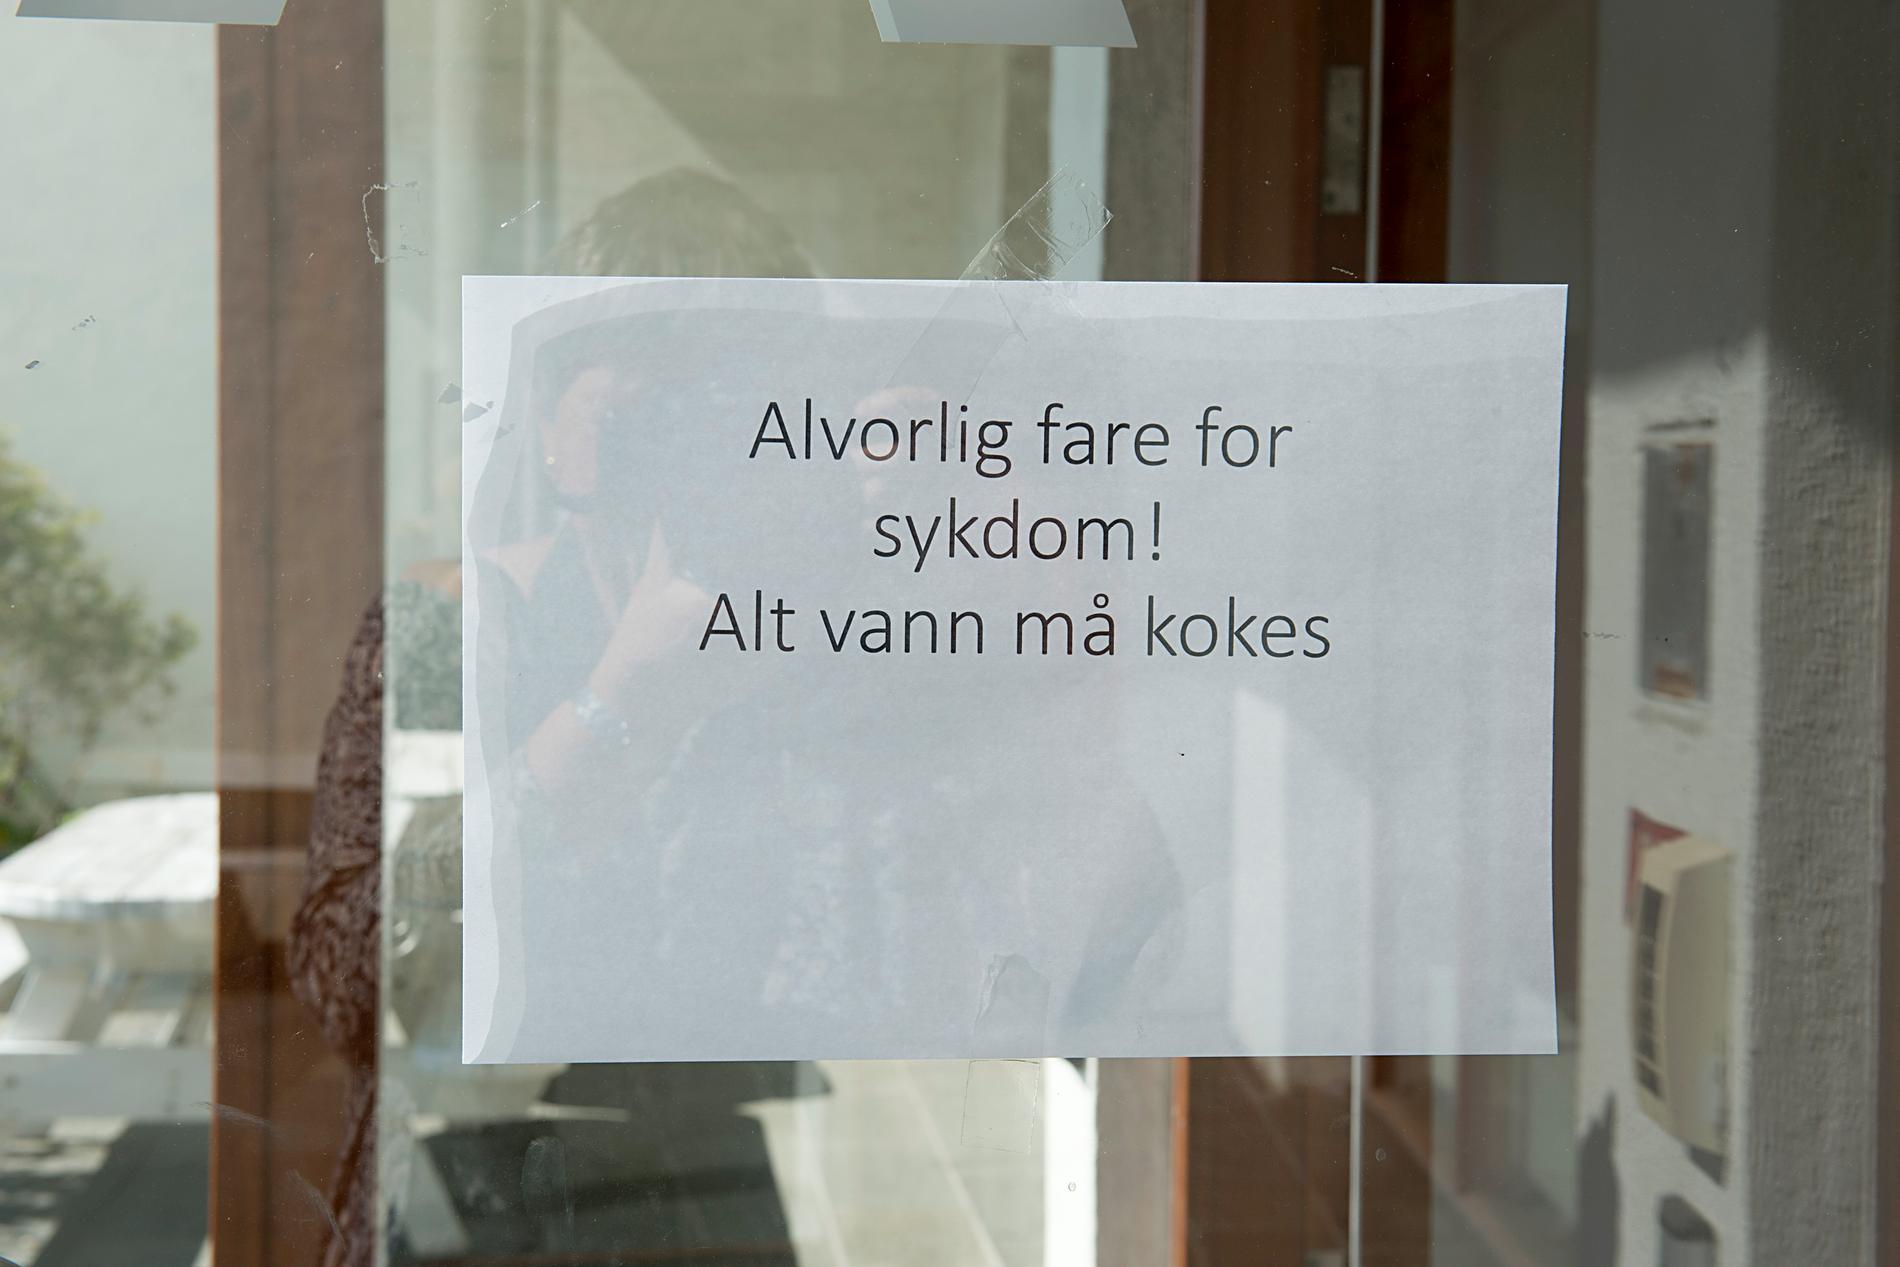 Askøys invånare uppmanas att koka allt dricksvatten.